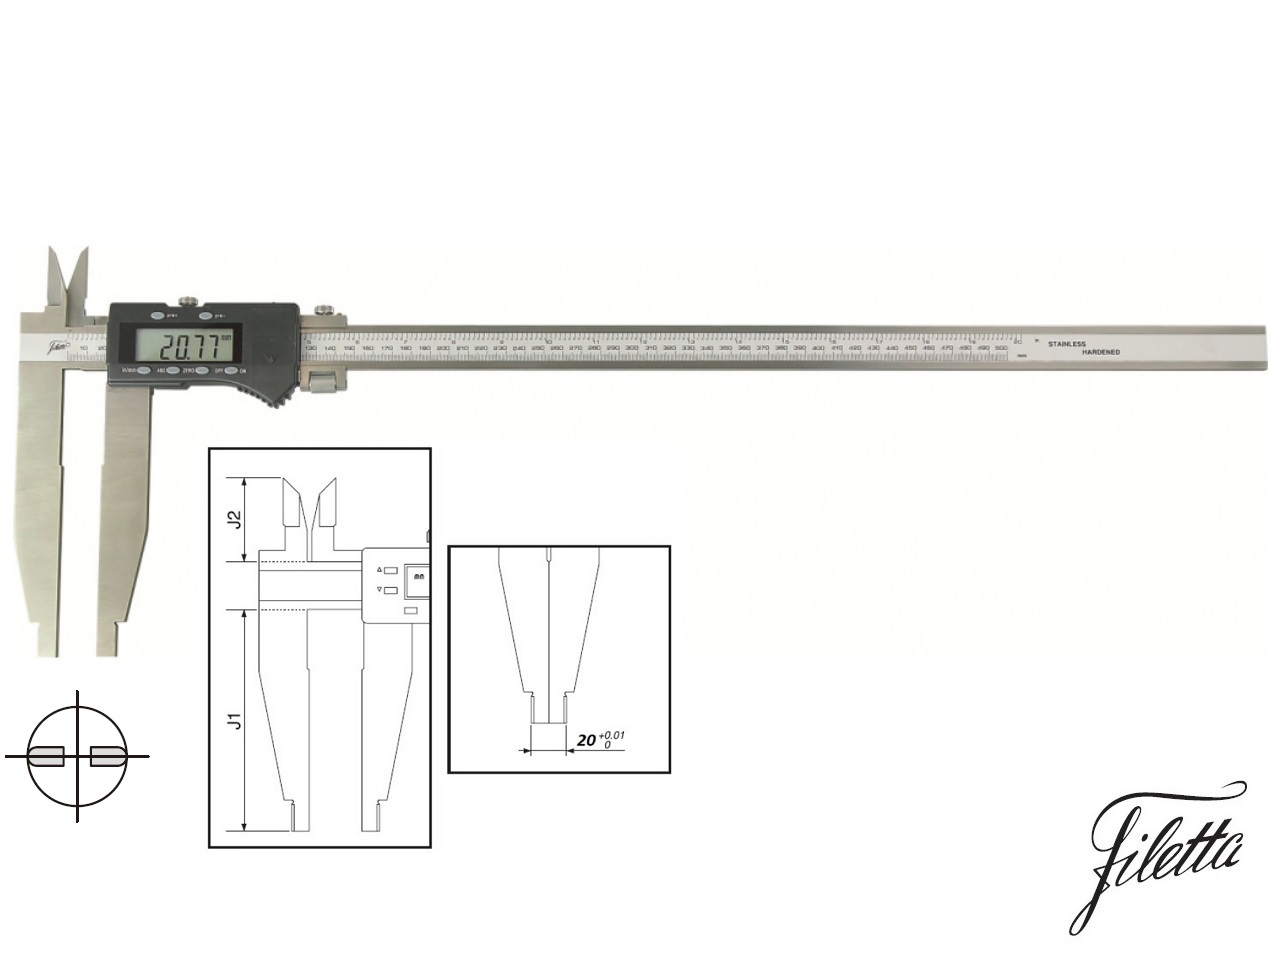 Digitální posuvné měřítko Filetta 0-1500/200 mm s měřicími nožíky pro vnitřní měření